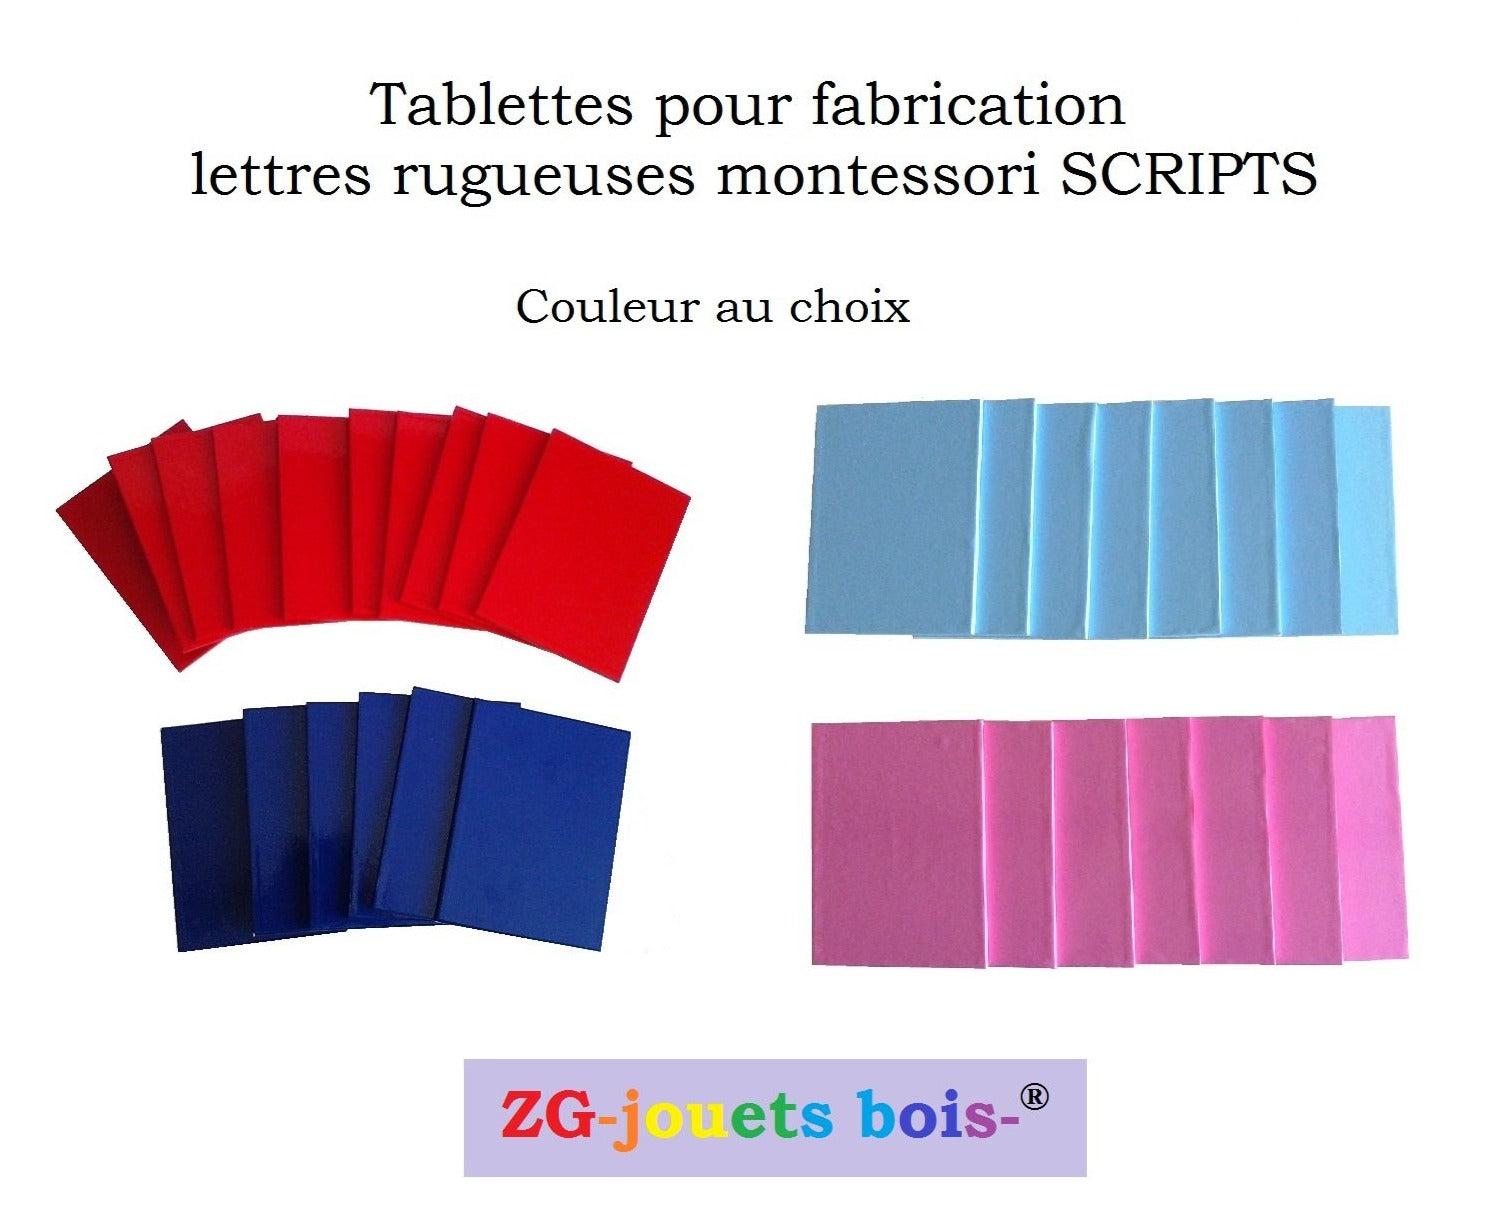 tablettes pour fabrication de lettres rugueuses montessori scripts majuscules ou minuscules, couleurs au choix, rouge et bleu ou rose et bleu, réalisation ZG-jouetsbois-